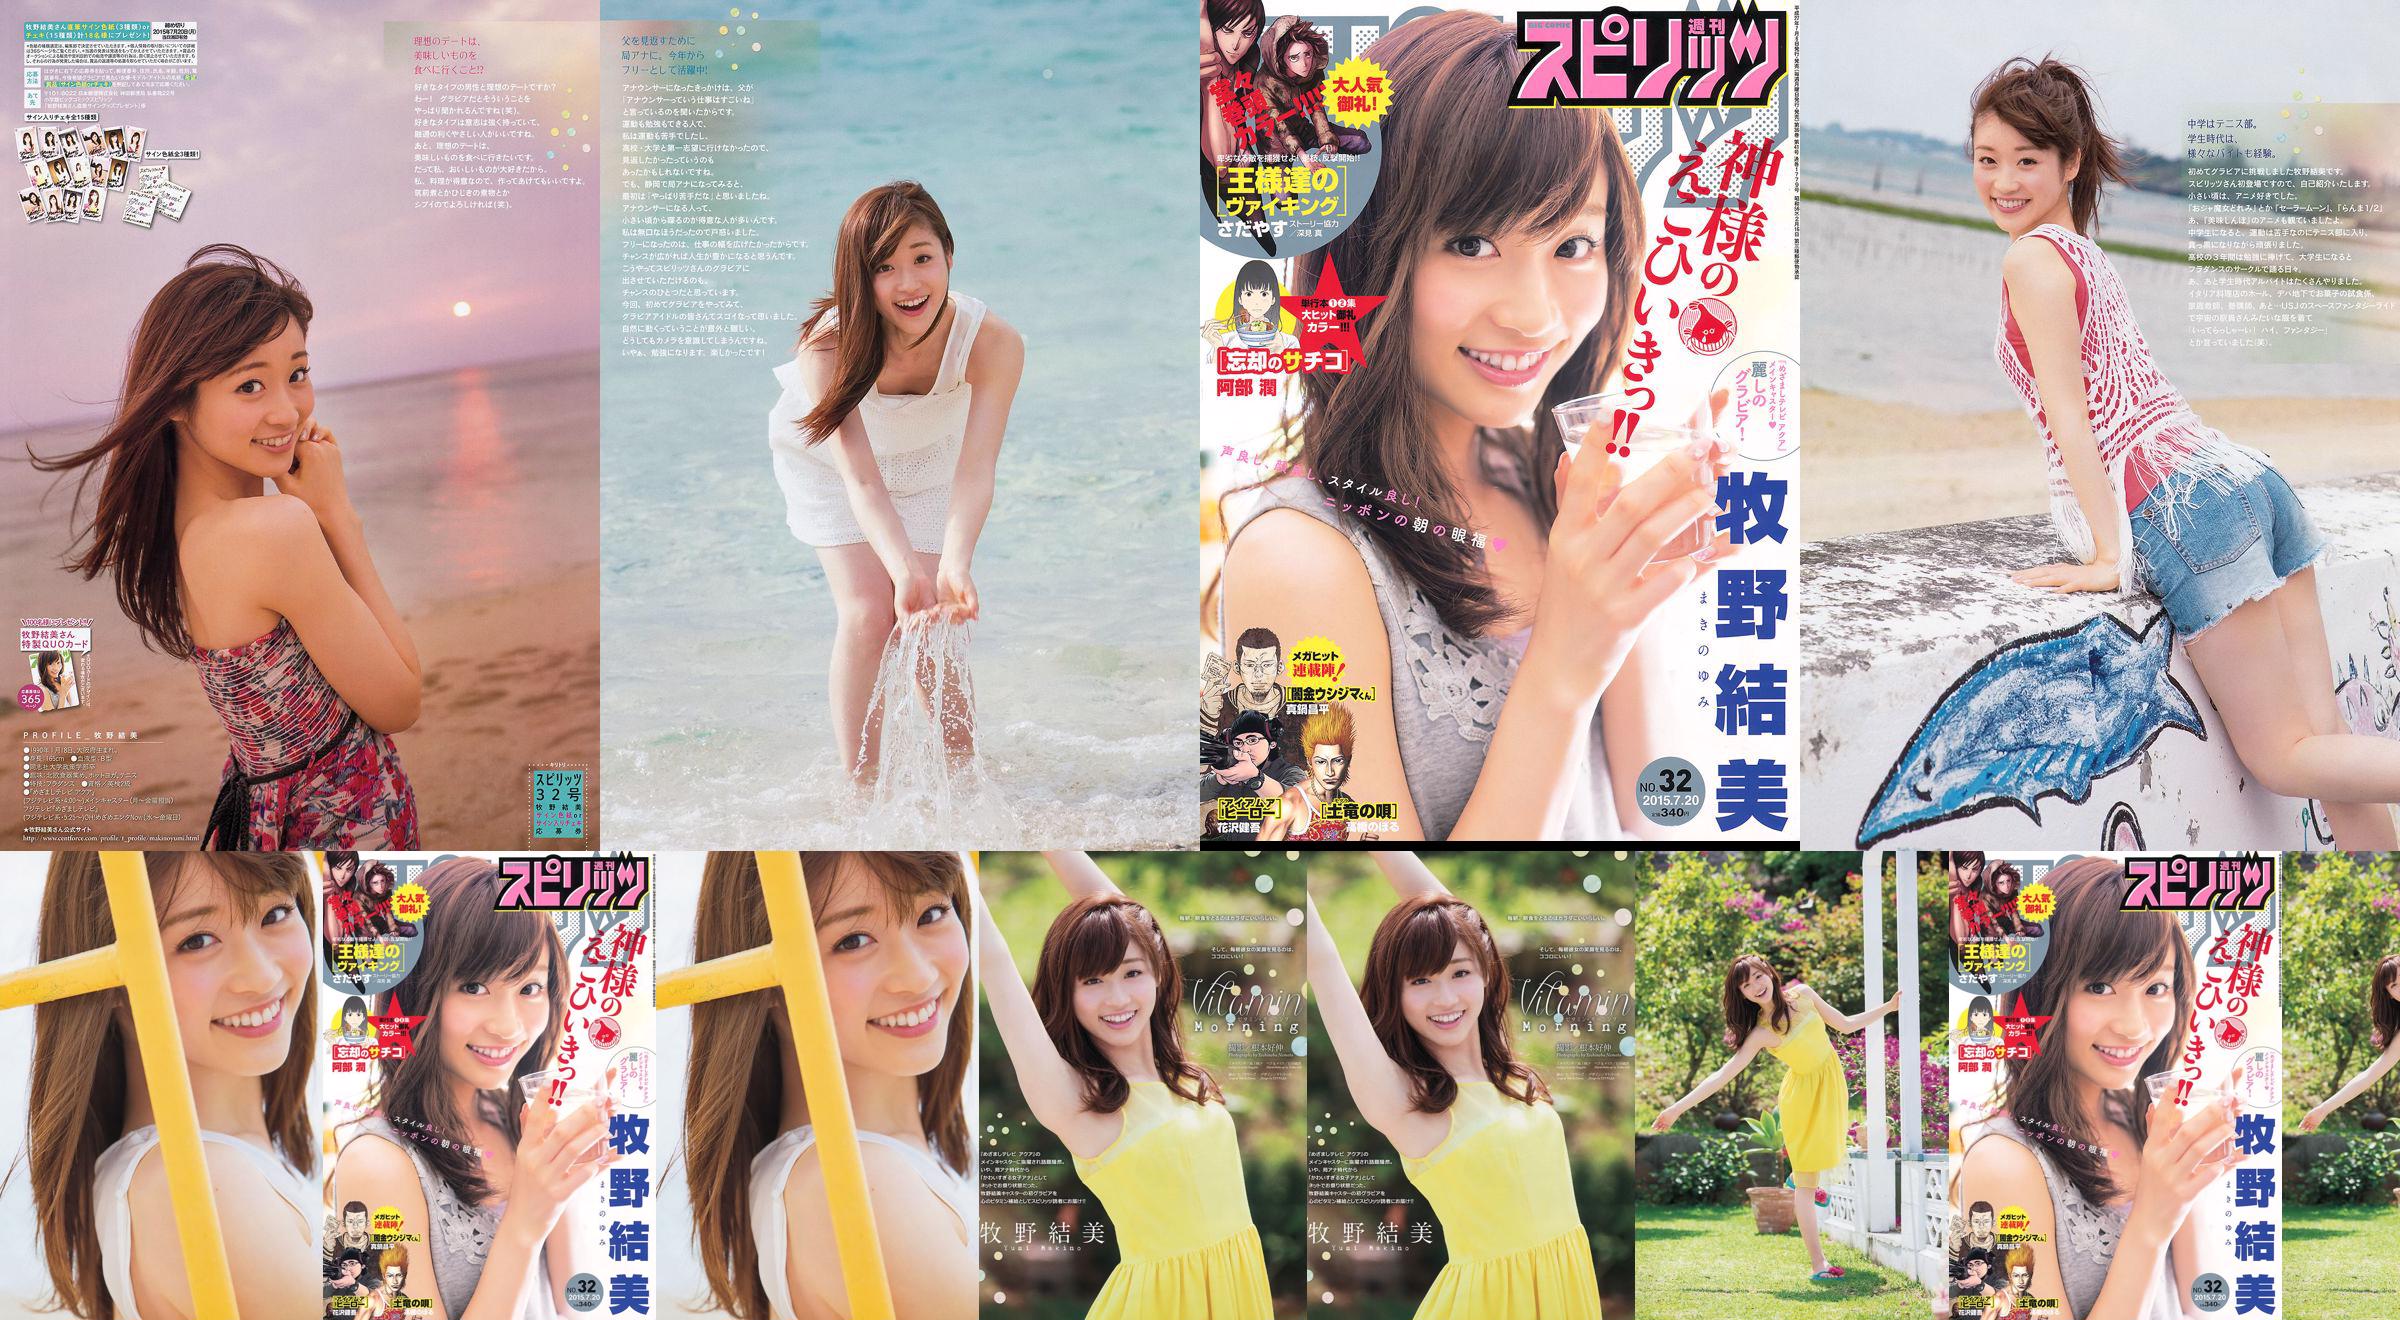 [Weekly Big Comic Spirits] Yumi Makino 2015 No.32 Photo Magazine No.4a885d Página 2